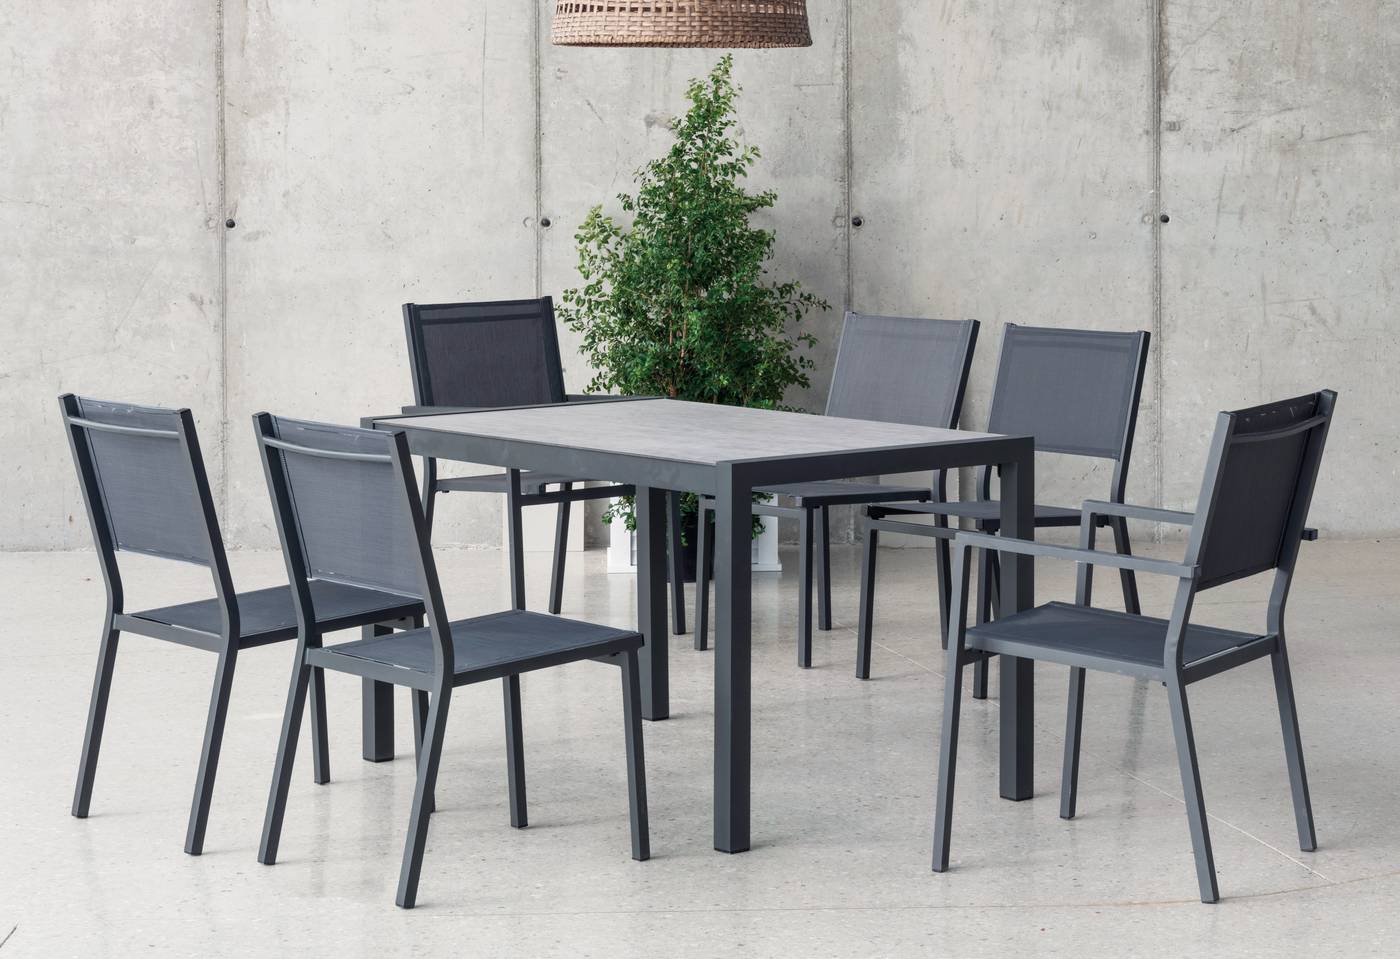 Conjunto de aluminio: mesa extensible con tablero HPL + 6 sillones de textilen. Disponible en color blanco o antracita.